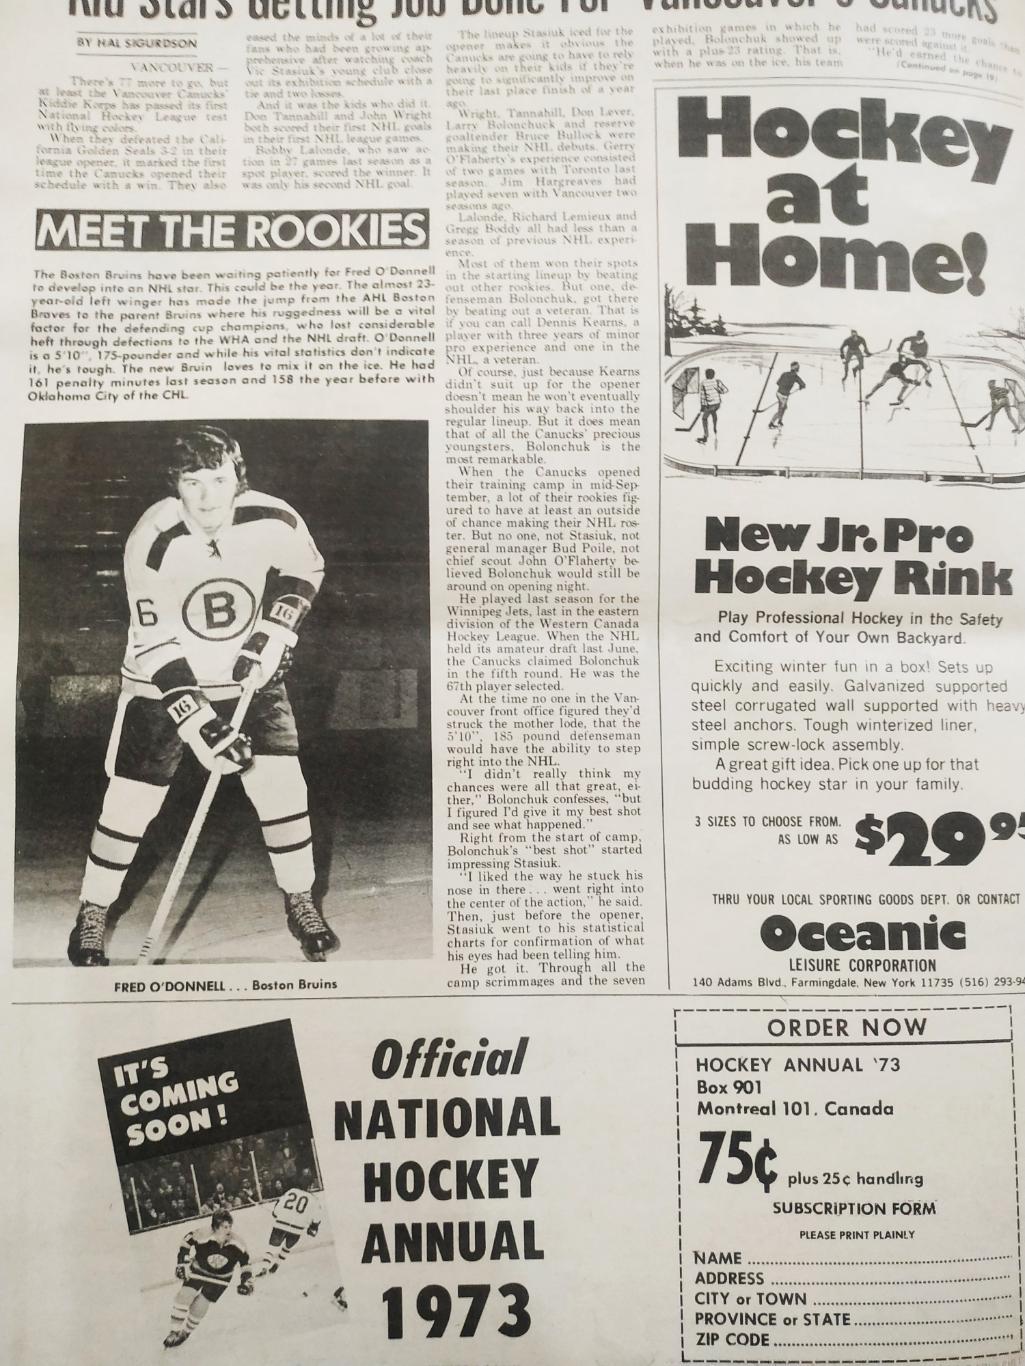 ХОККЕЙ ЖУРНАЛ ЕЖЕНЕДЕЛЬНИК НХЛ НОВОСТИ ХОККЕЯ OCT.27 1972 NHL THE HOCKEY NEWS 3